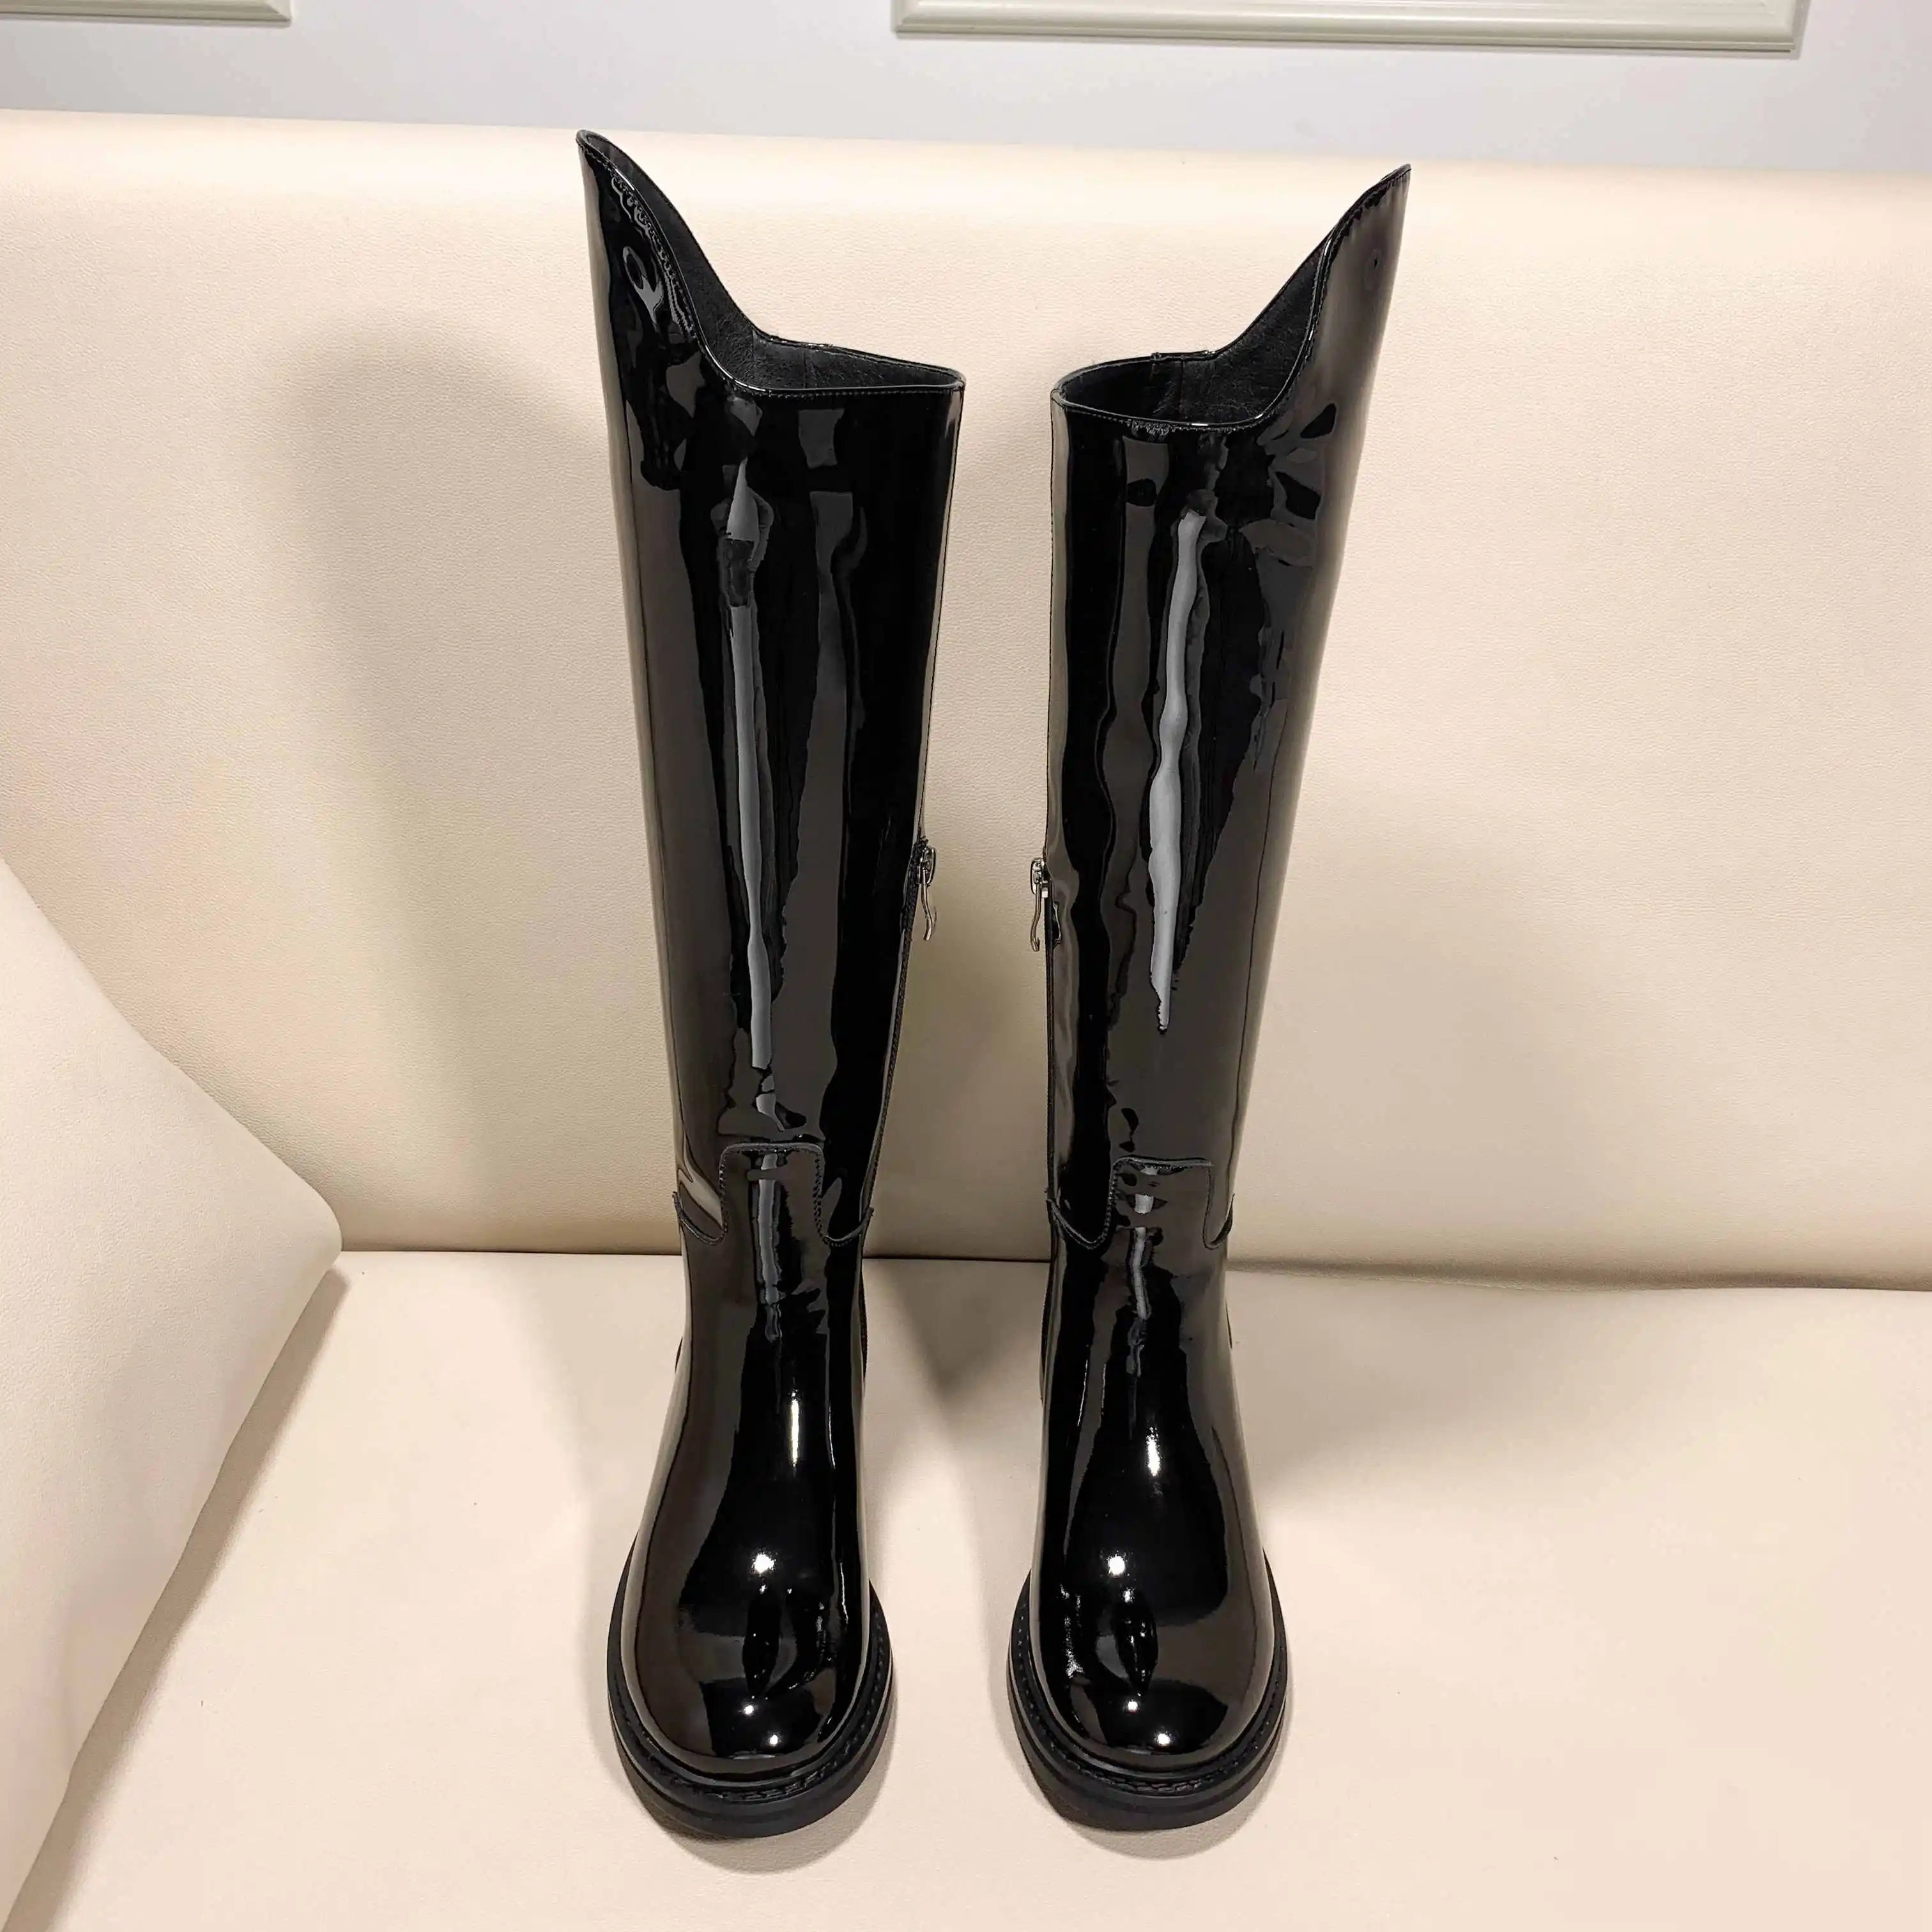 Krazing pot/«гармошкой», из тисненой коровьей кожи Сапоги выше колена необычного дизайна, женская обувь с круглым носком, низким каблуки, модель модная сапоги-гладиаторы высотой до бедер l16